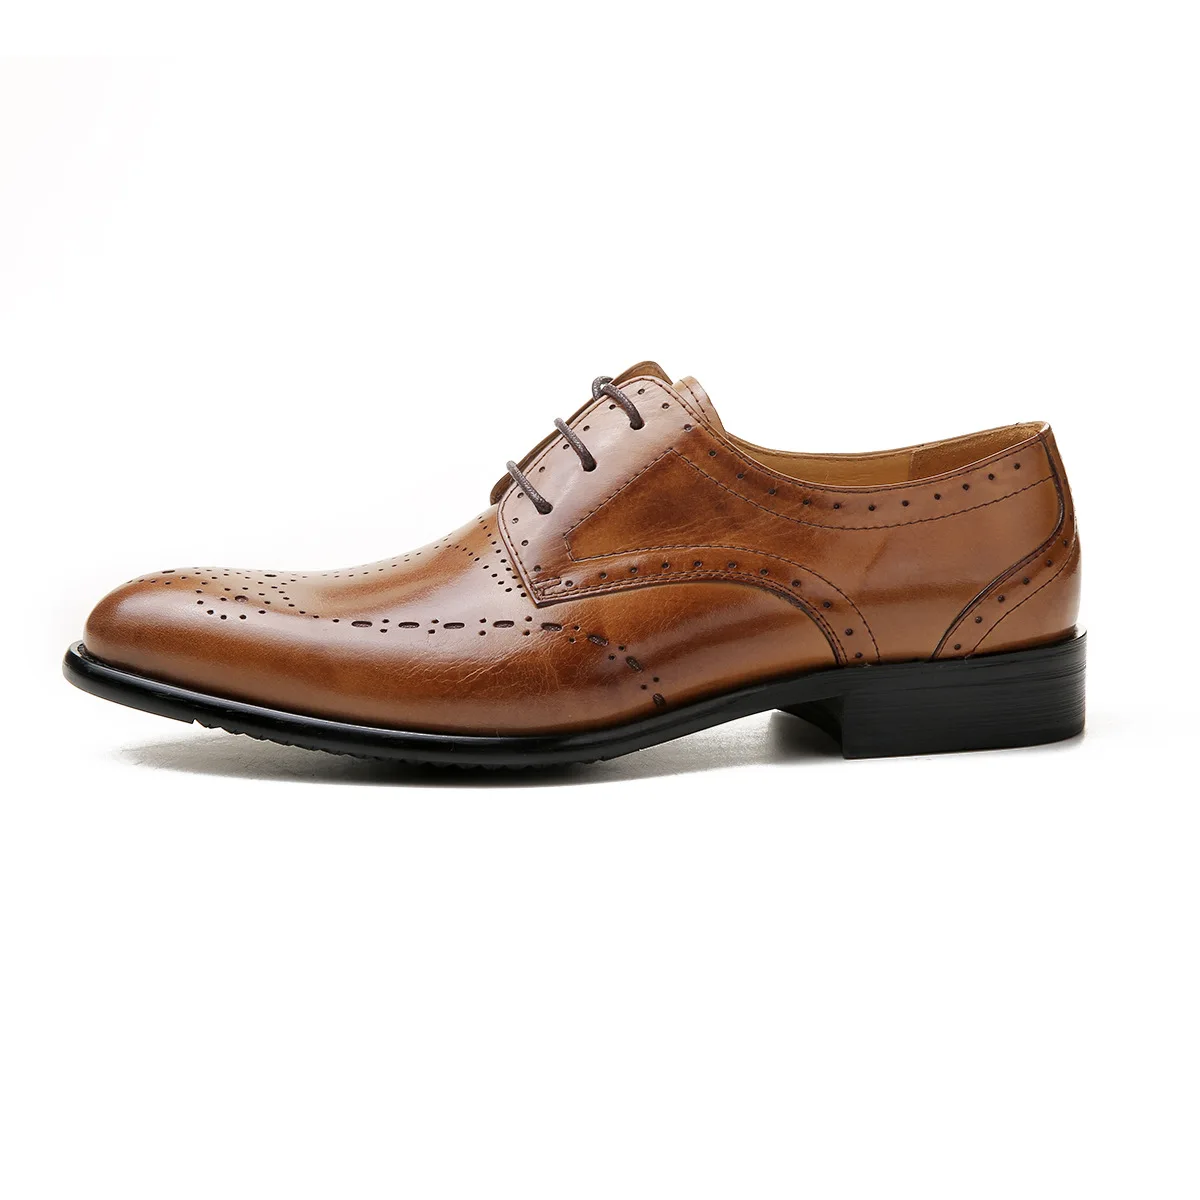 QYFCIOUFU/2019; Мужские модельные туфли; Новое поступление; деловые туфли с острым носком в британском стиле; модные офисные туфли из натуральной